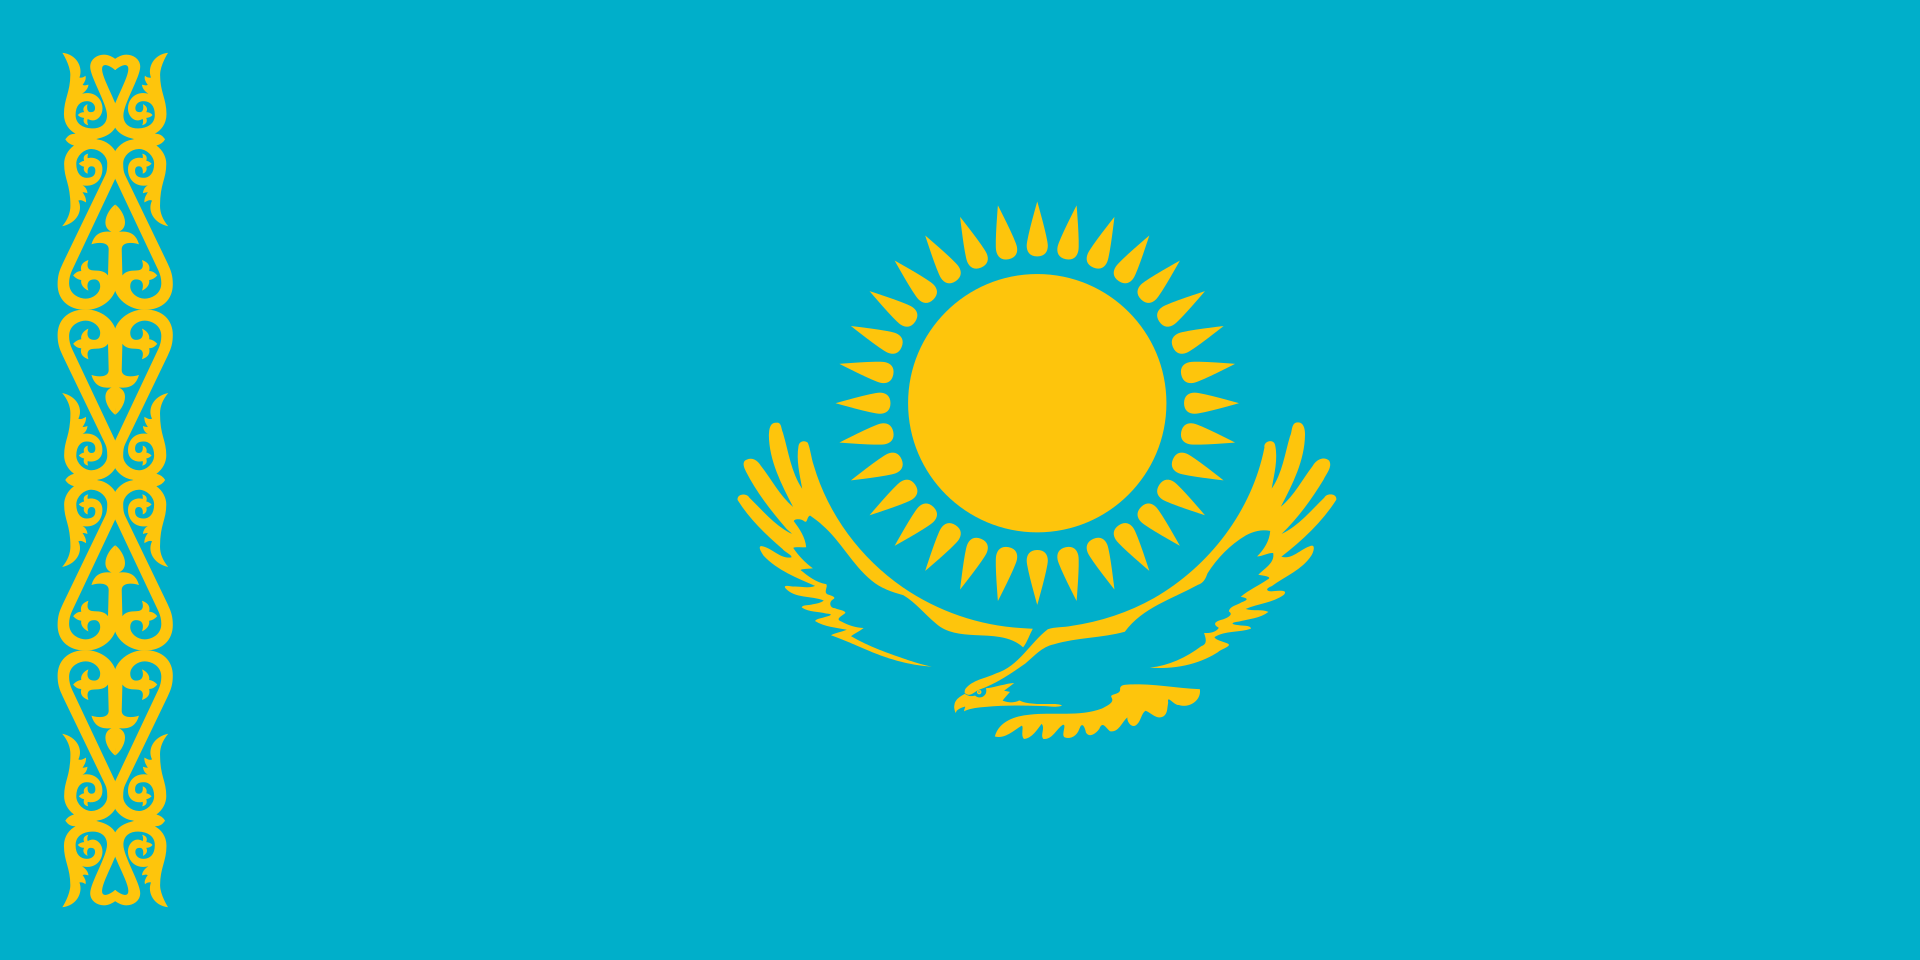 Казахстан - Республика